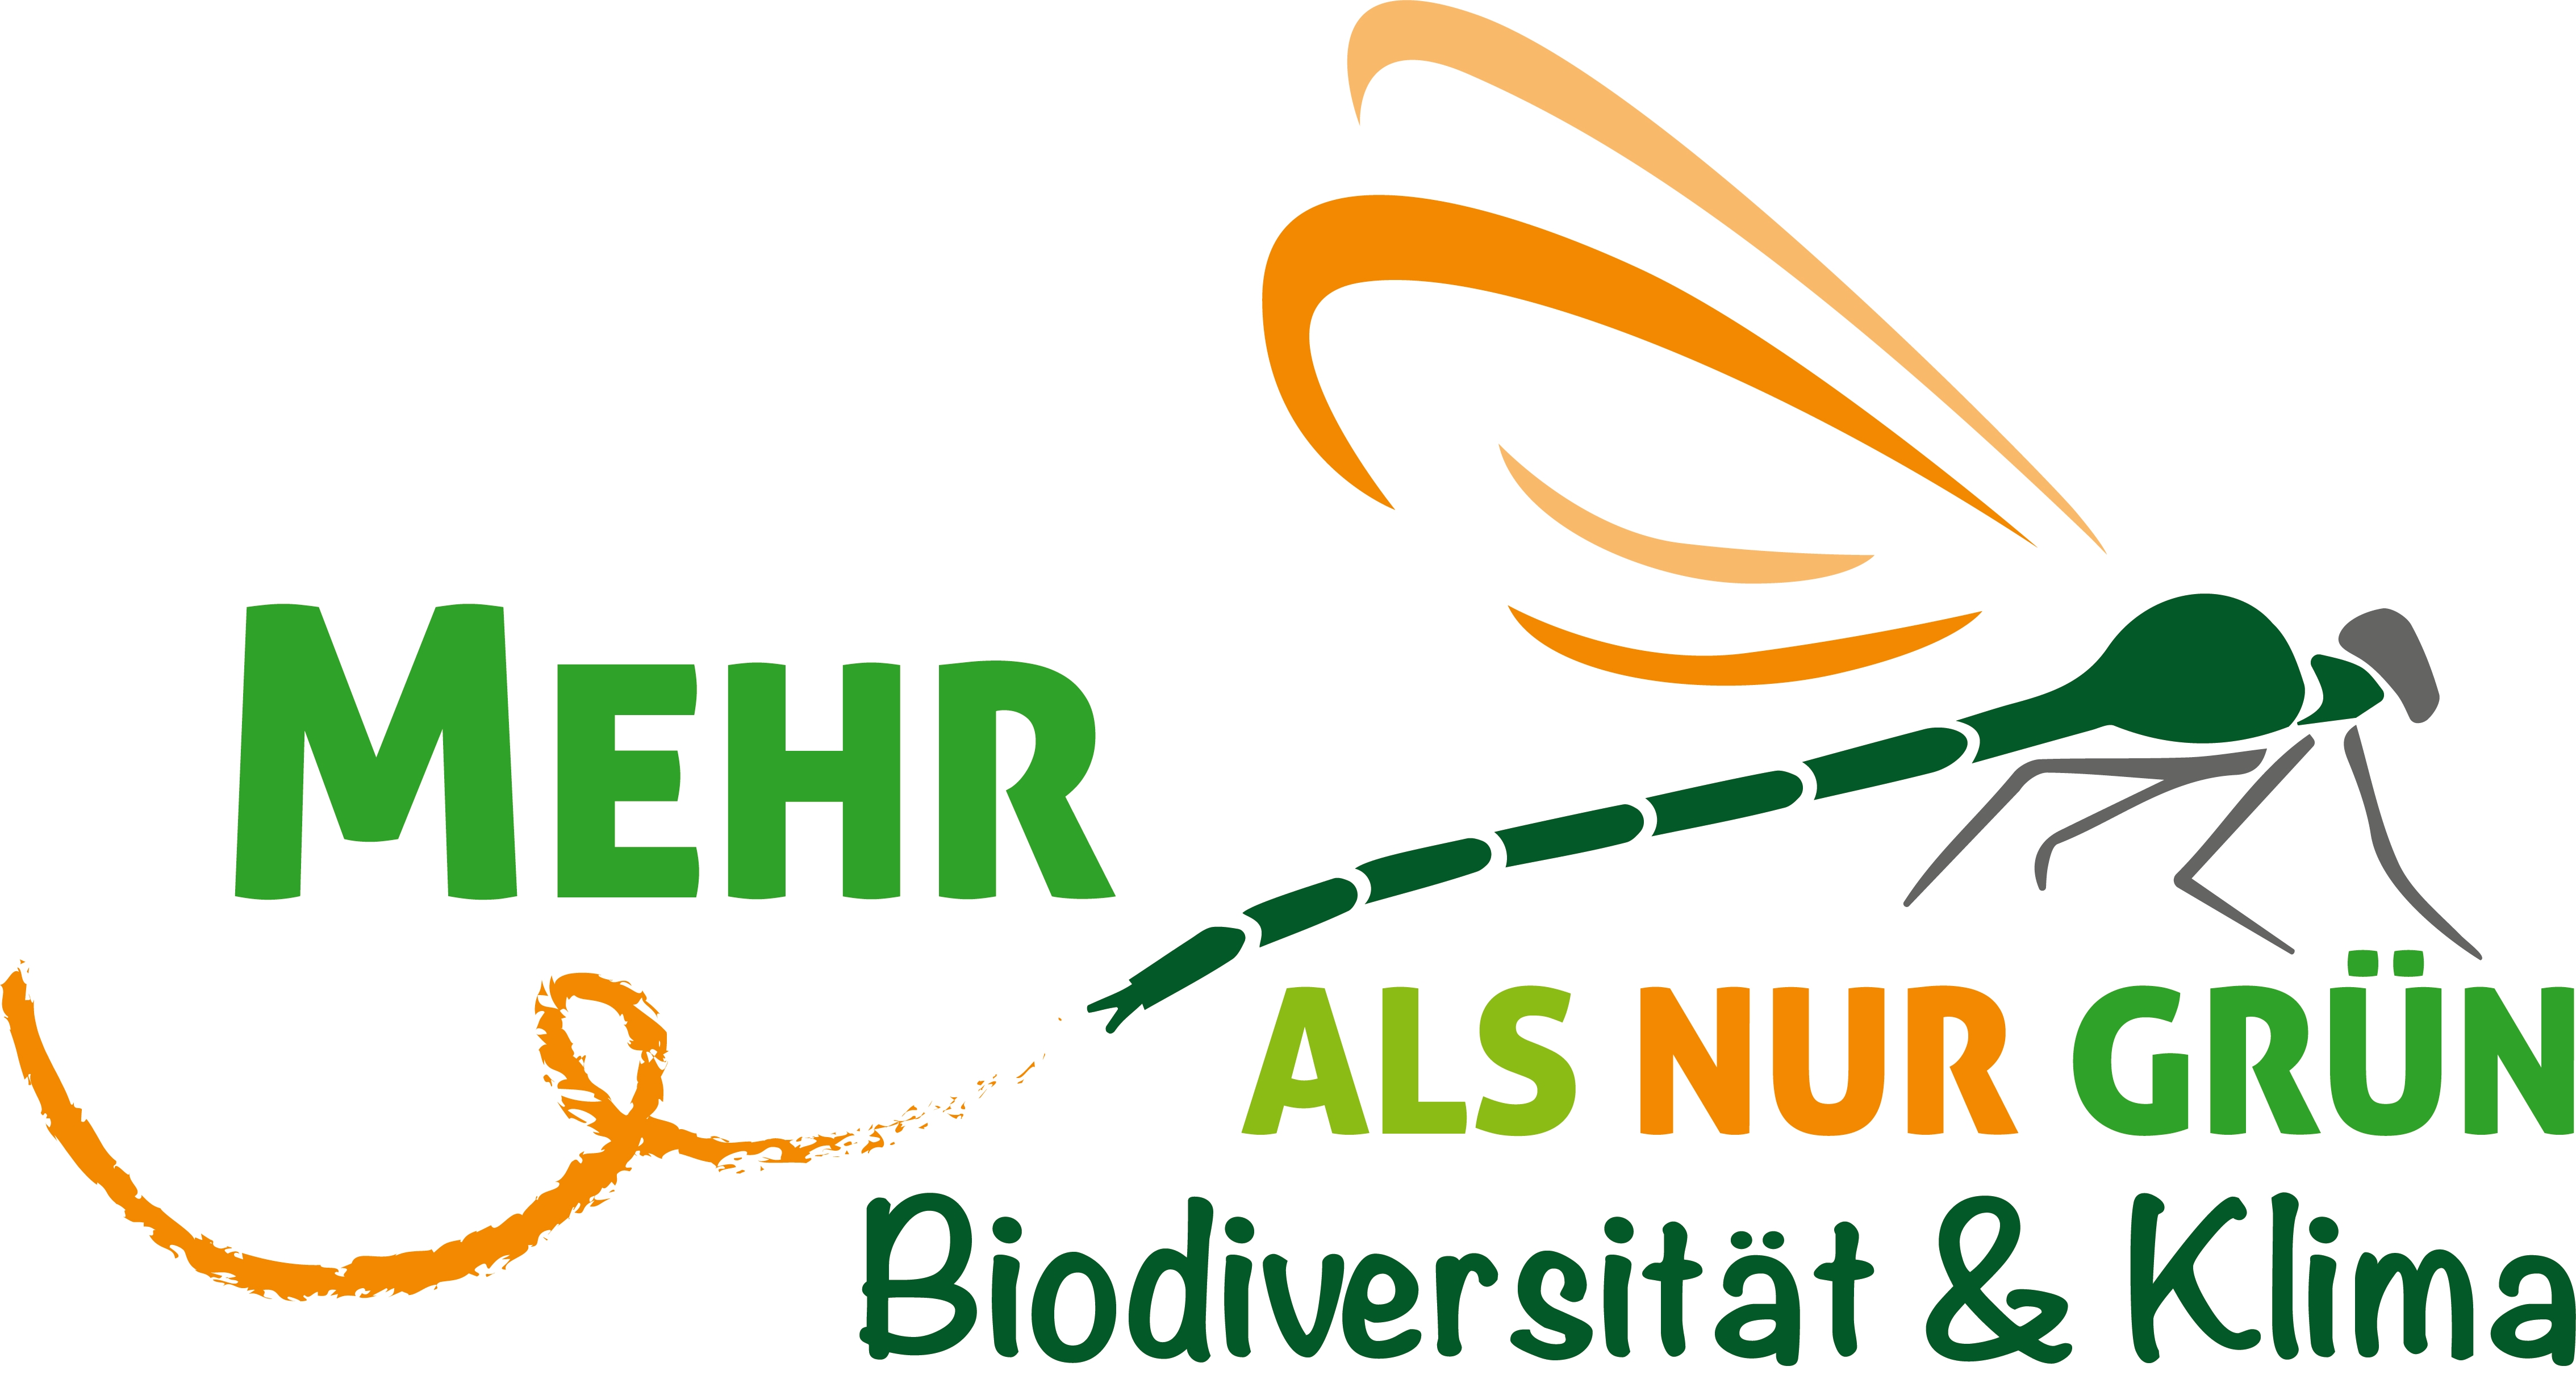 Logo des Projekts Mehr als nur Grün mit der Zeichnung einer Libelle und dem Schriftzug Mehr als nur Grün Biodiversität und Klima.